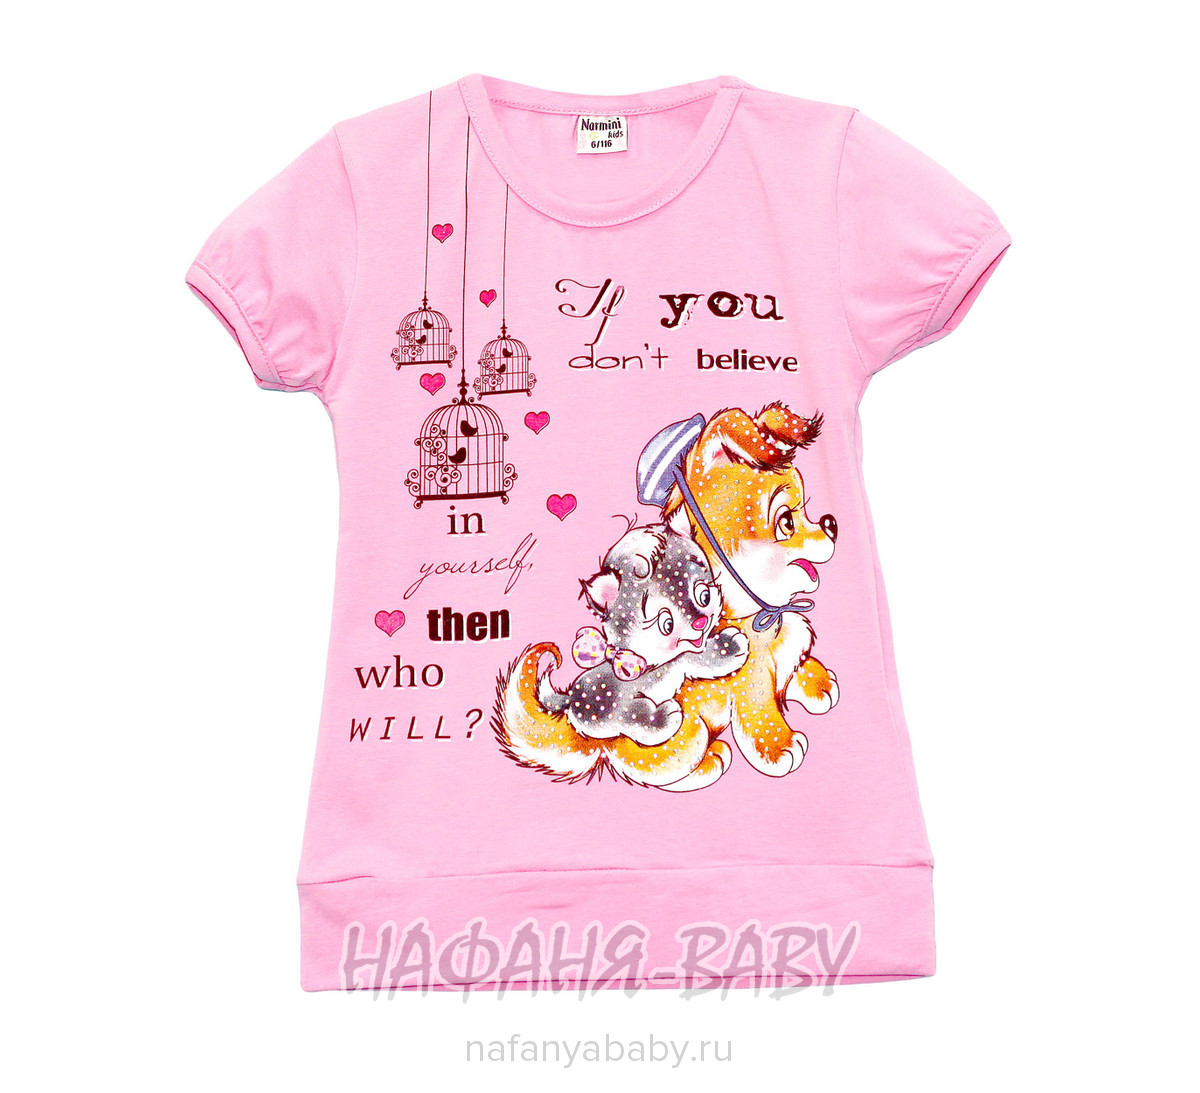 Детская футболка NARMINI арт: 5537, 1-4 года, 5-9 лет, цвет малиновый, оптом Турция